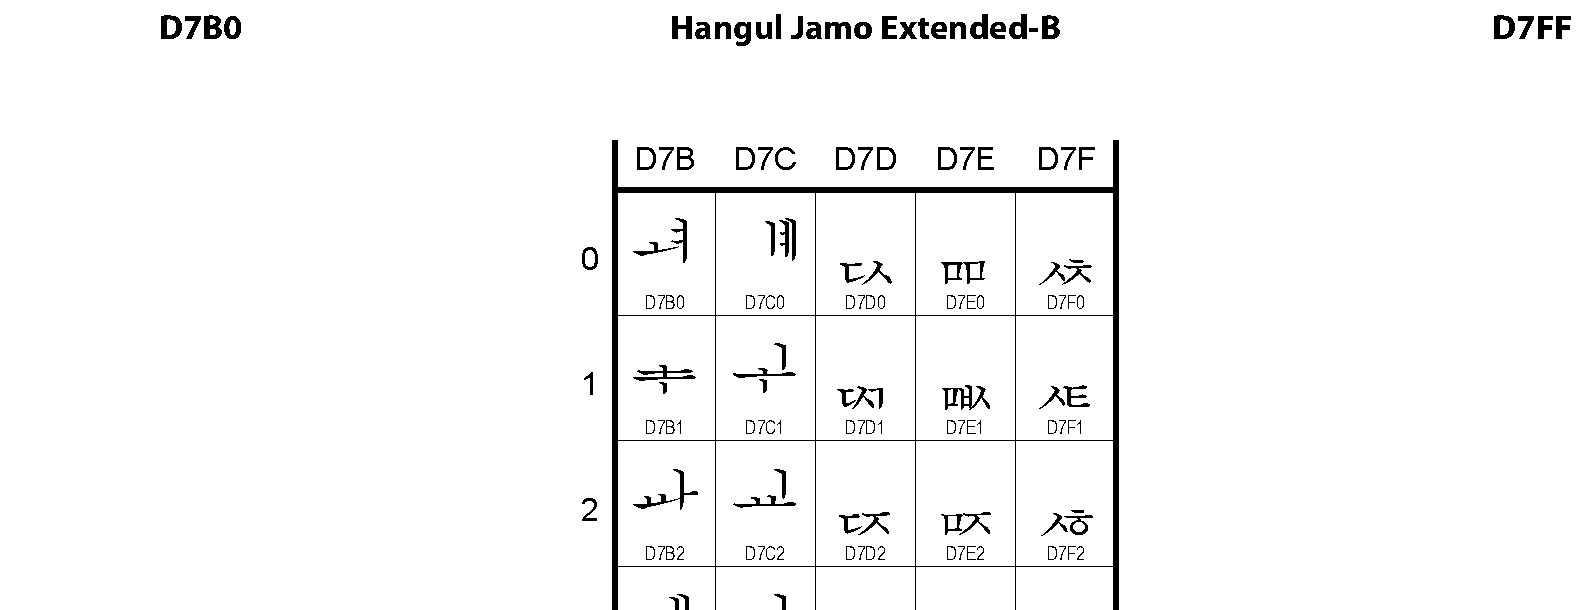 Unicode - Hangul Jamo Extended-B